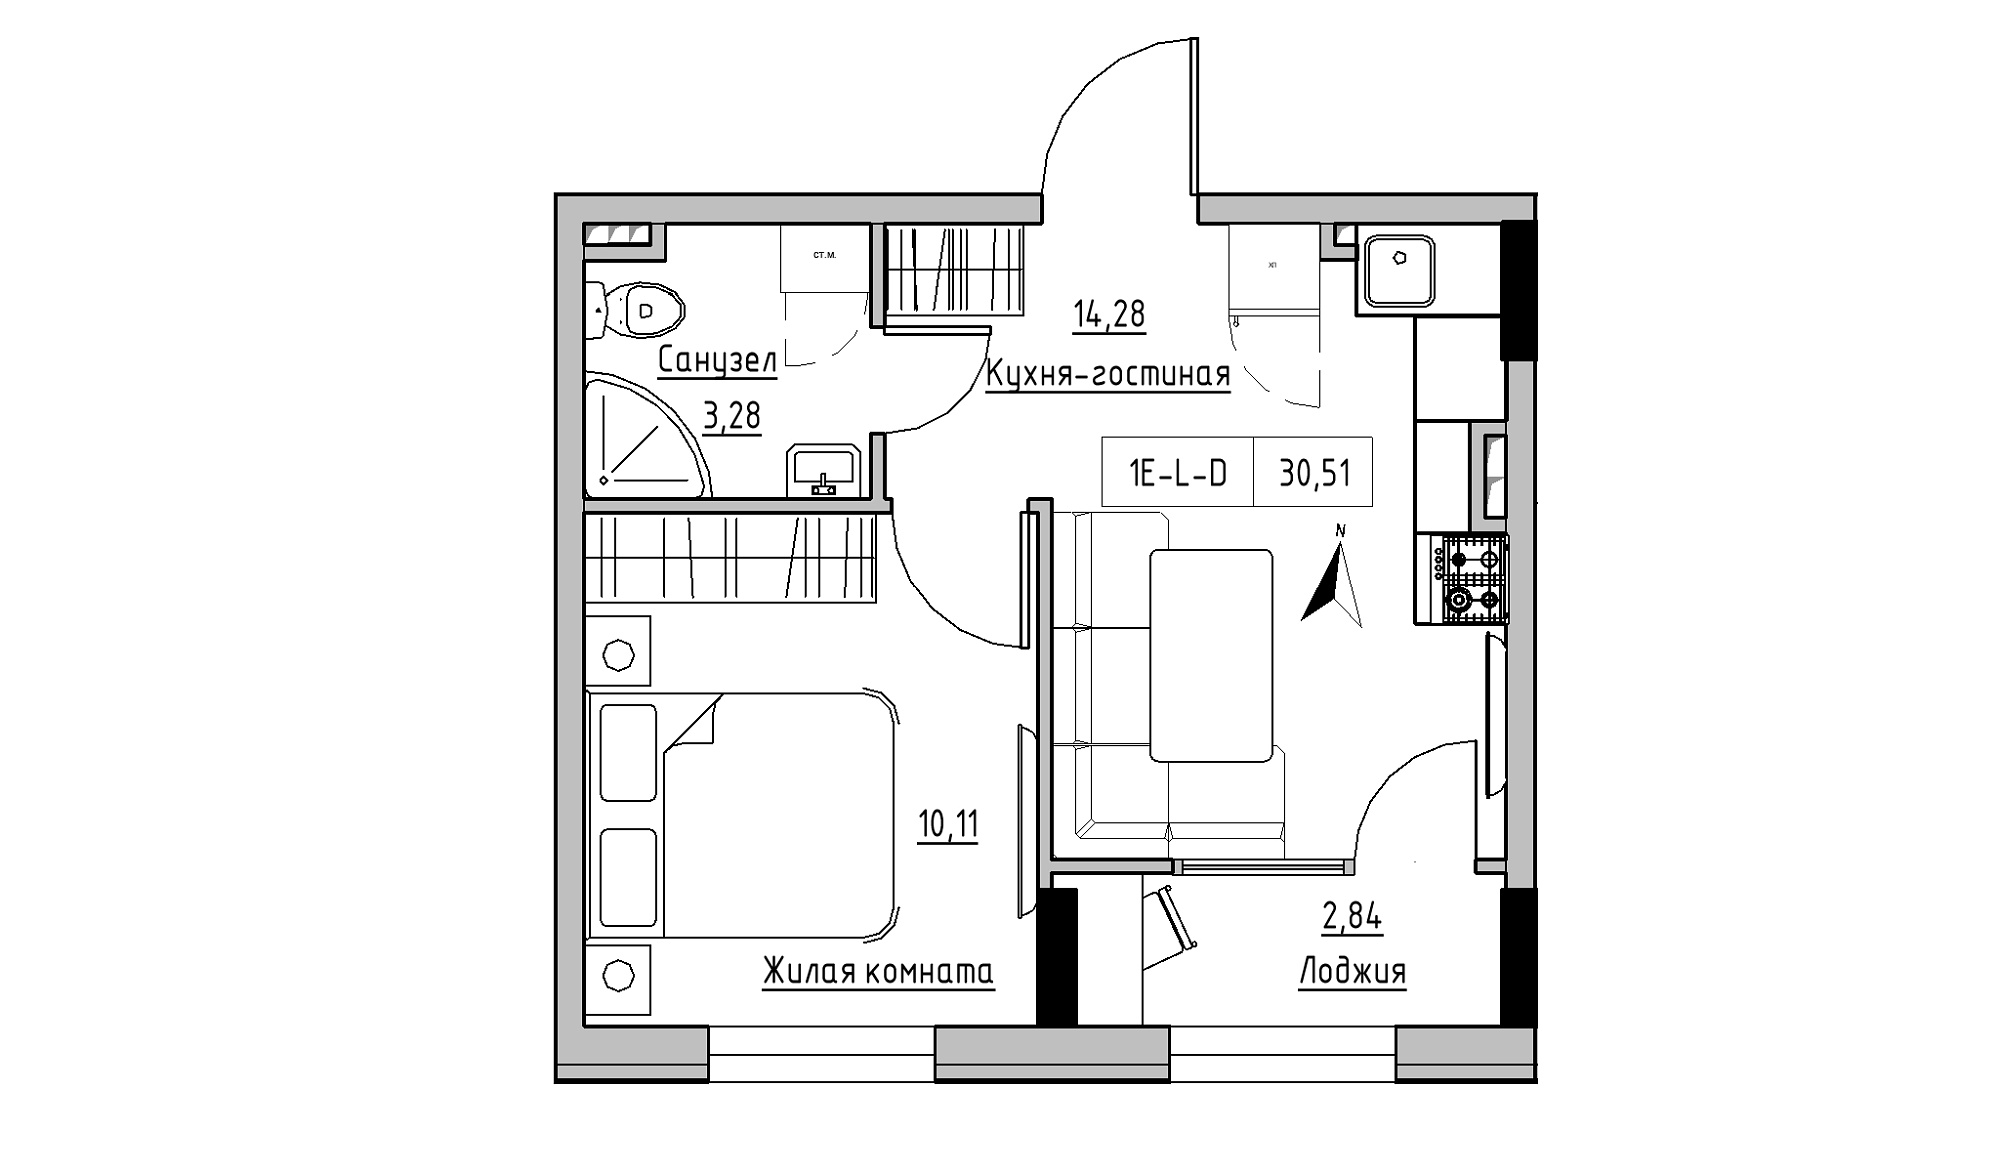 Планування 1-к квартира площею 30.51м2, KS-025-02/0013.